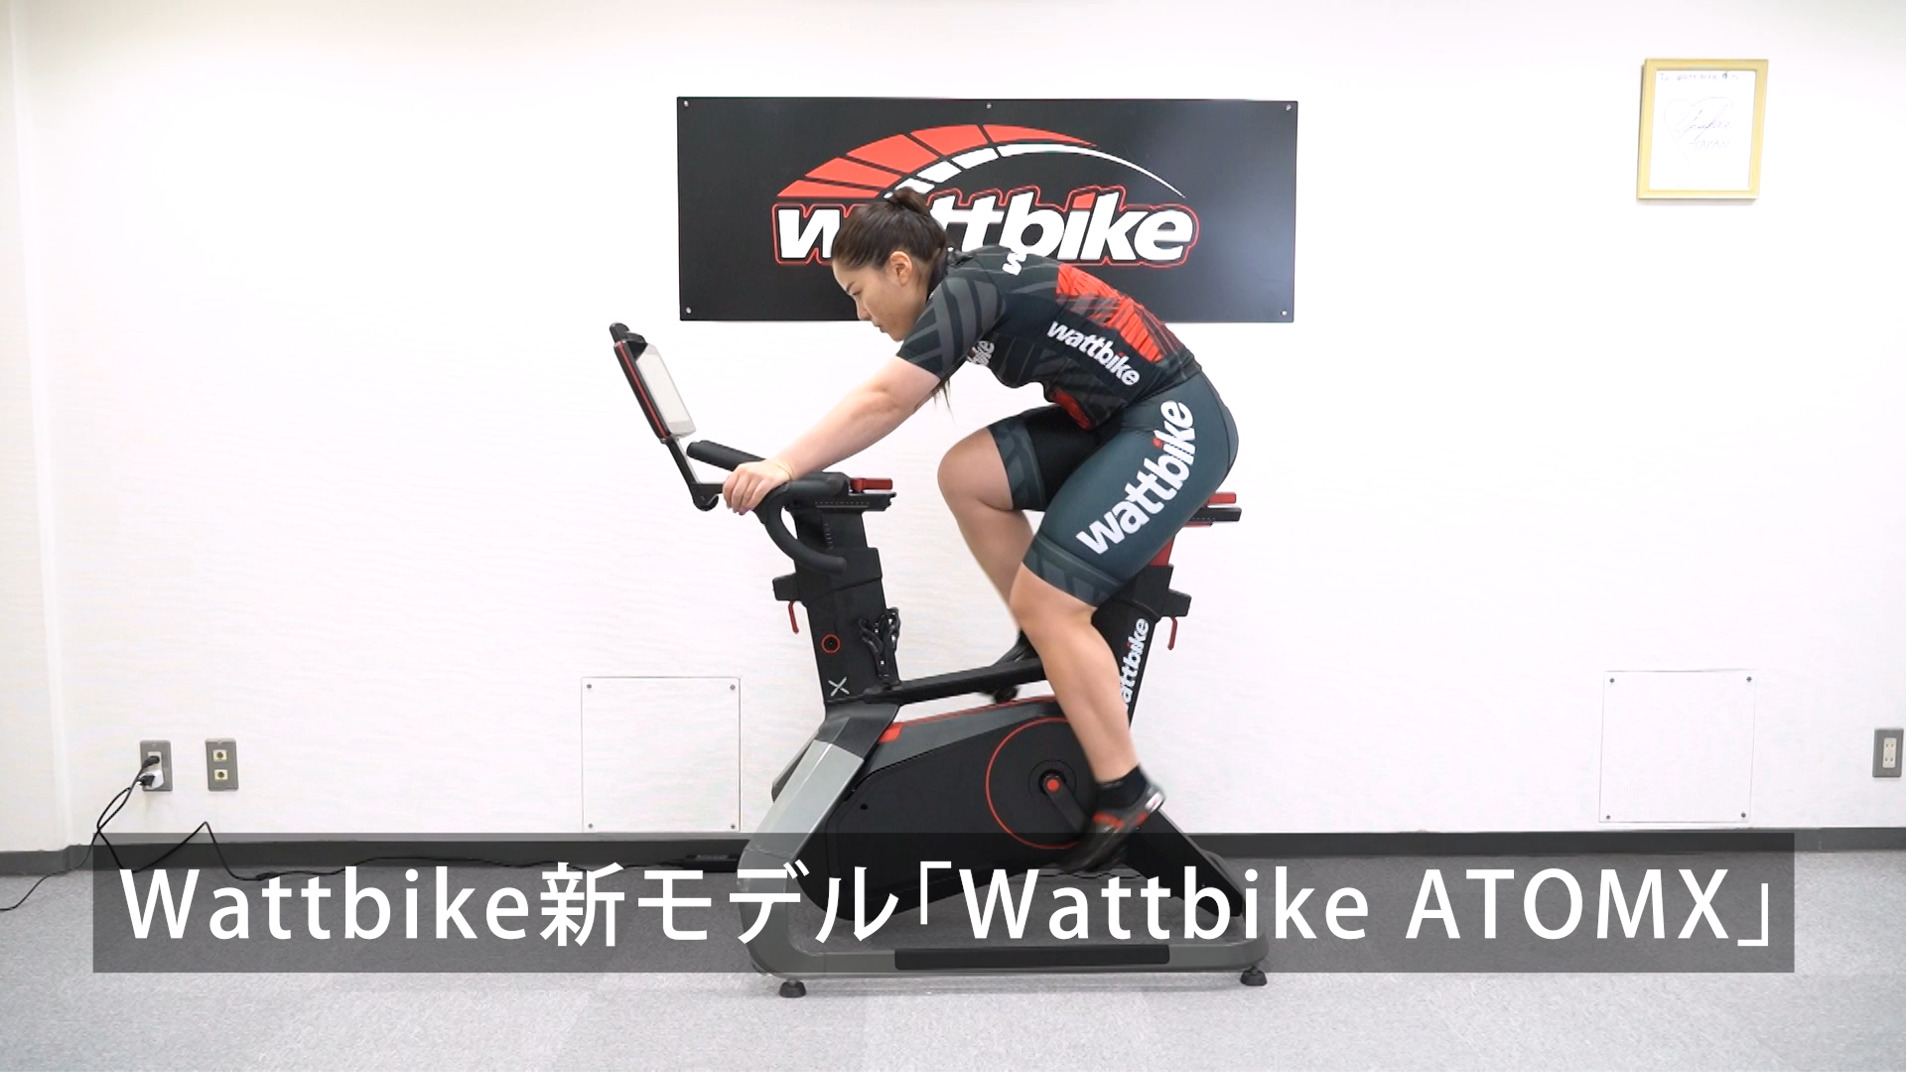 Wattbike ATOMX プロモーションビデオ公開 | 日本サイクス ワットバイク